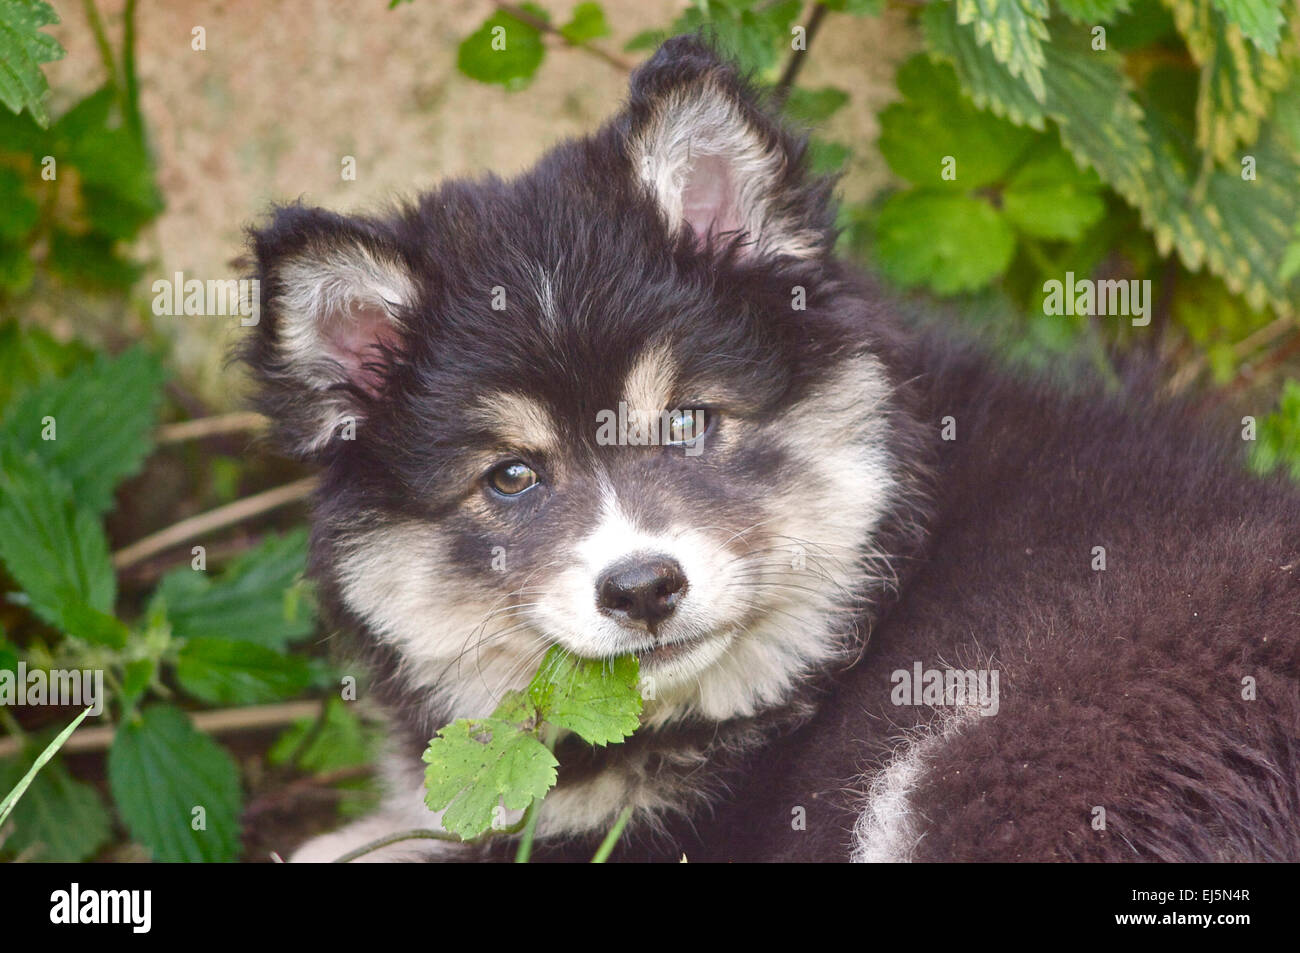 Finnish Lapphund puppy in garden Stock Photo